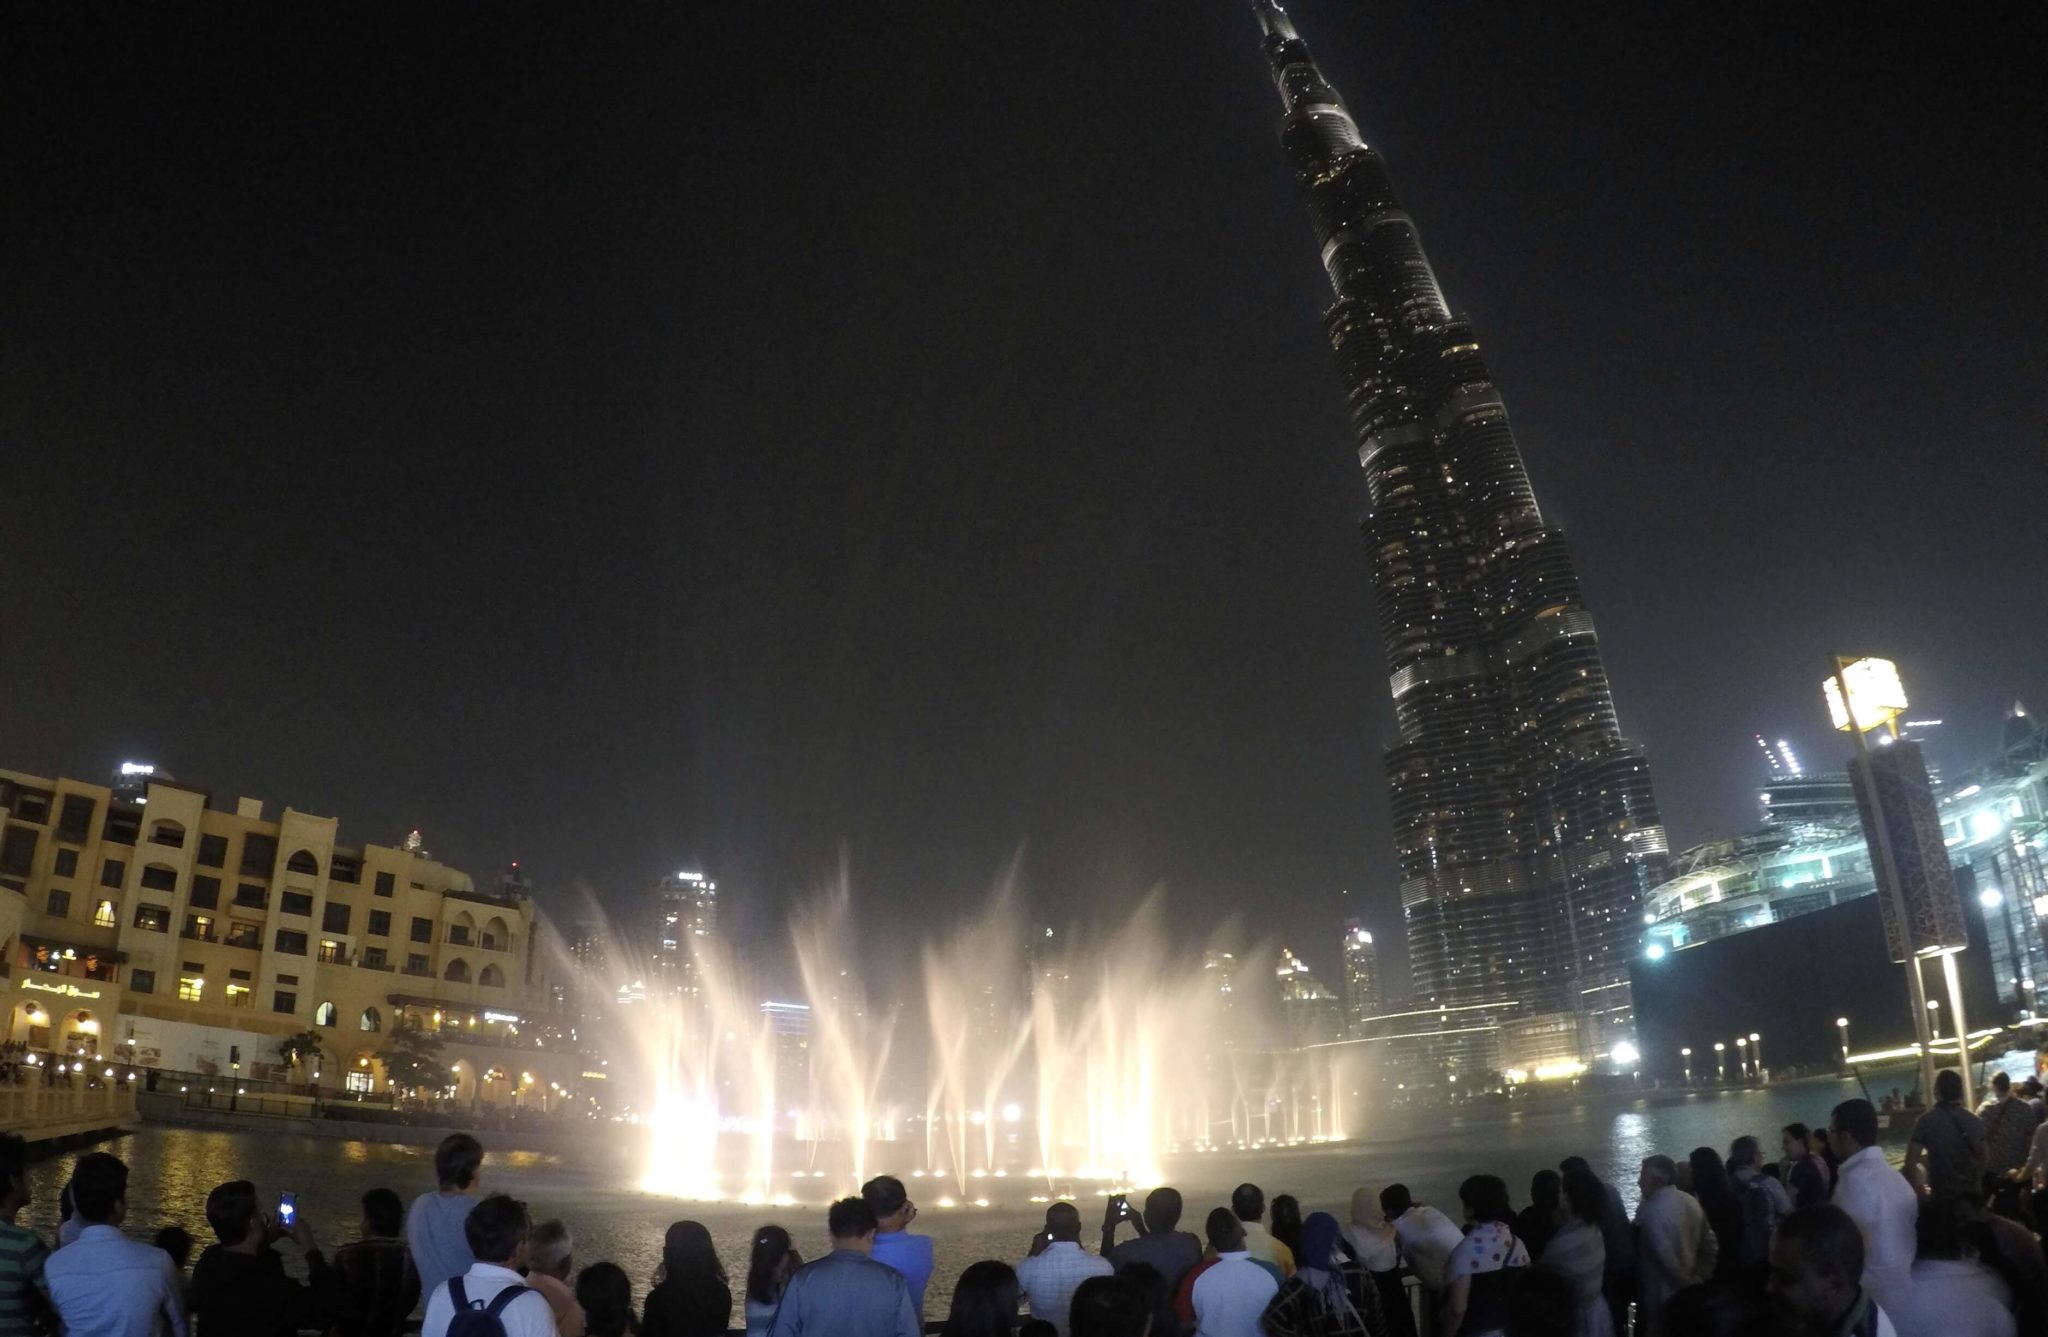 Las fuentes del Burj Khalifa